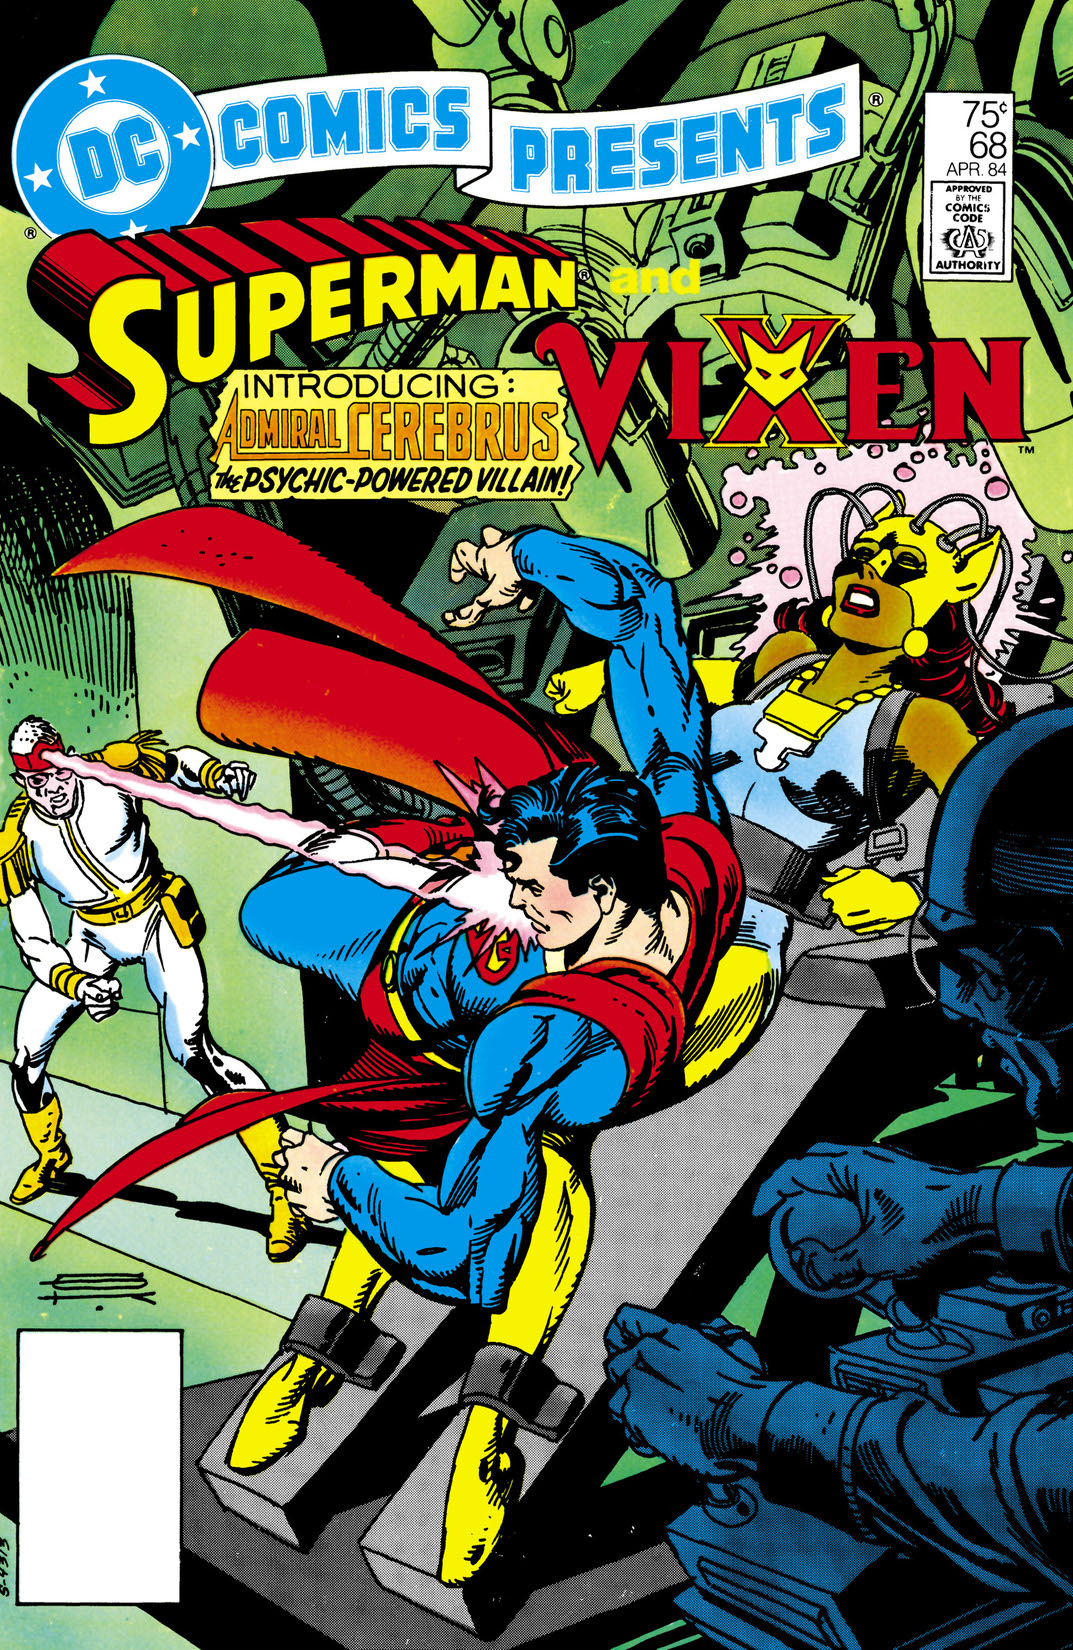 DC Comics Presents (1978-) #68 preview images